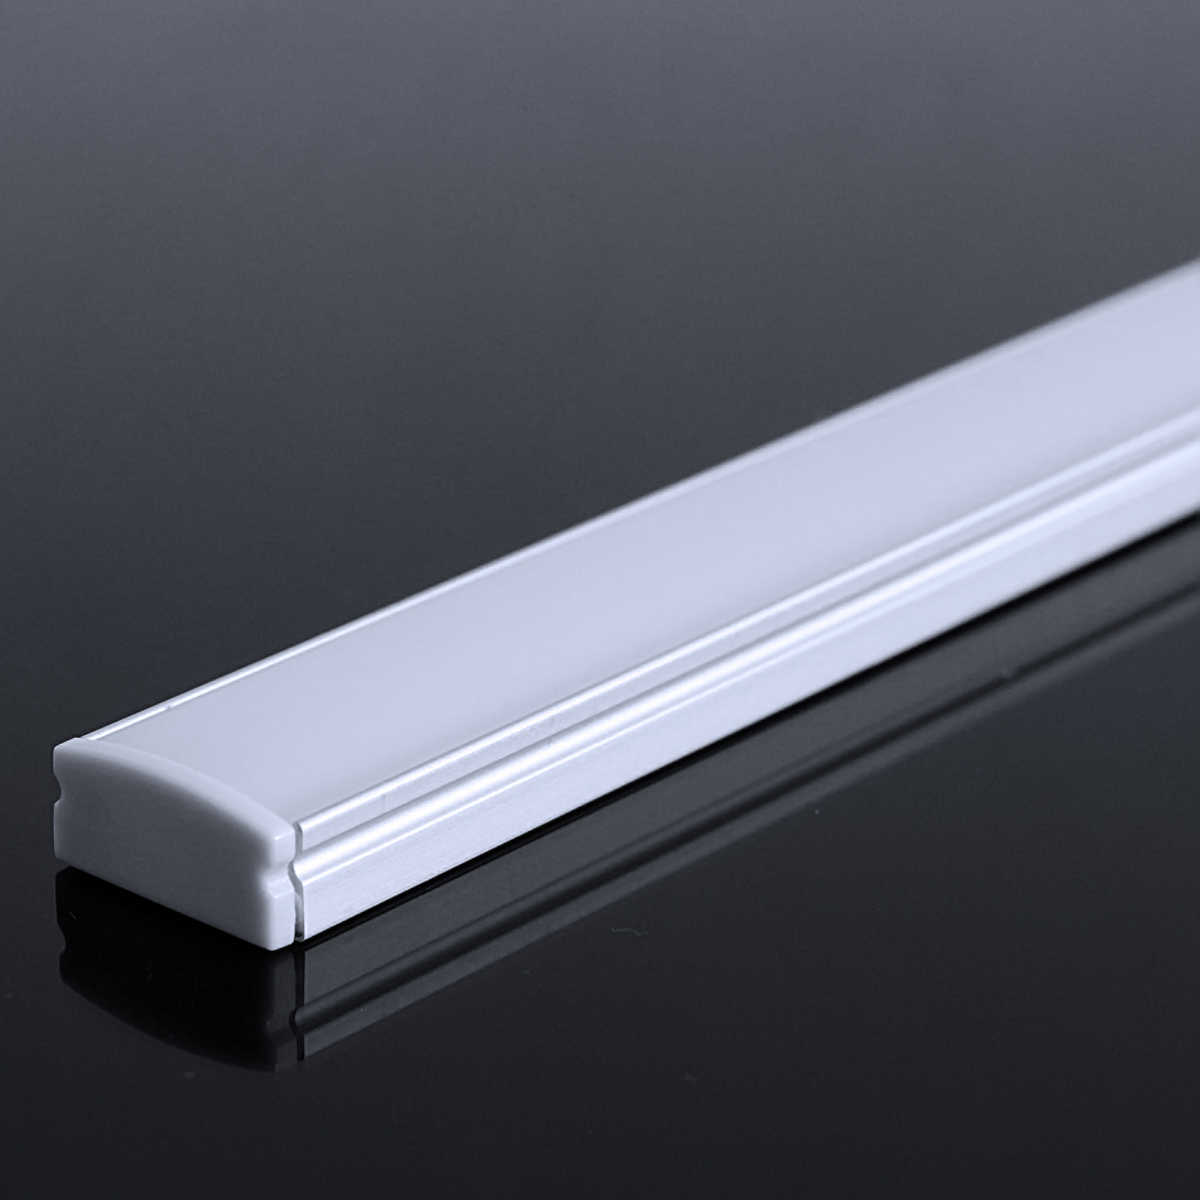 LED Flachprofil "Slim-Line" | Abdeckung diffus | Zuschnitt auf 116cm |